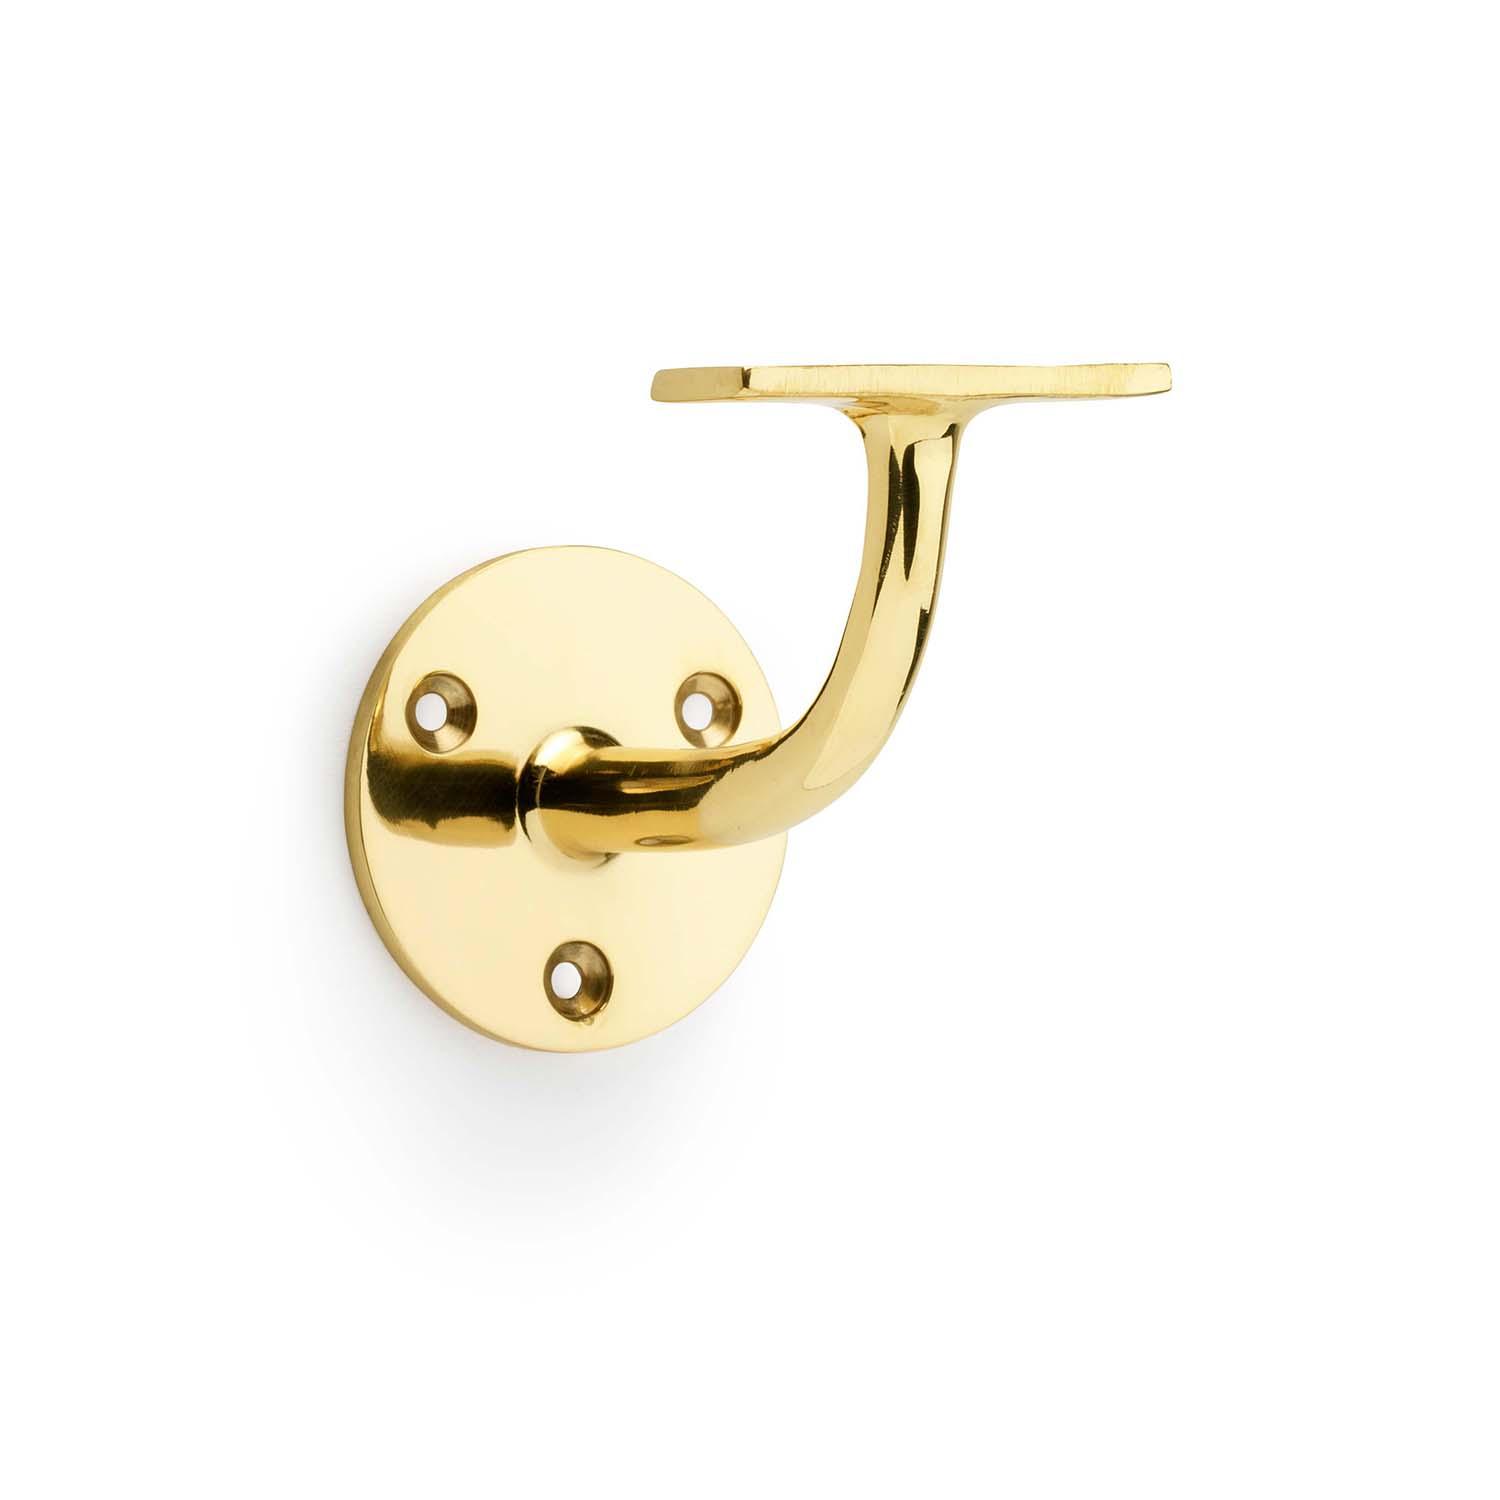 Brass Handrail Brackets - Bilden Home & Hardware Market